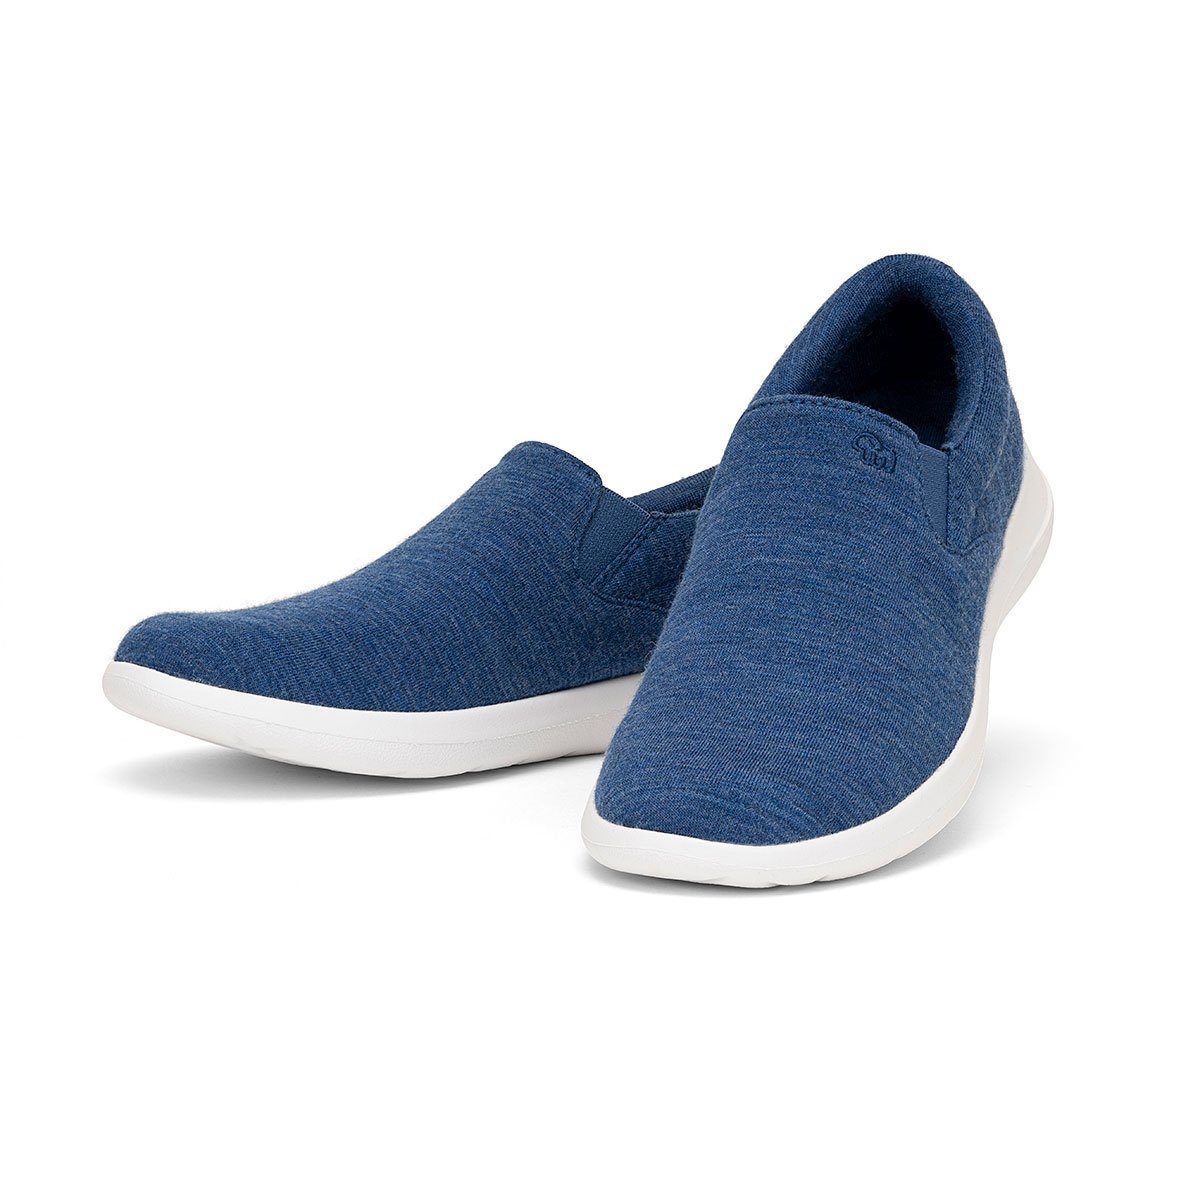 merinos - merinoshoes.de Atmungsaktiver Damenschuh aus Merinowolle Sneaker Eleganter blauer Schuh mit Slip-On Funktion jeansblau